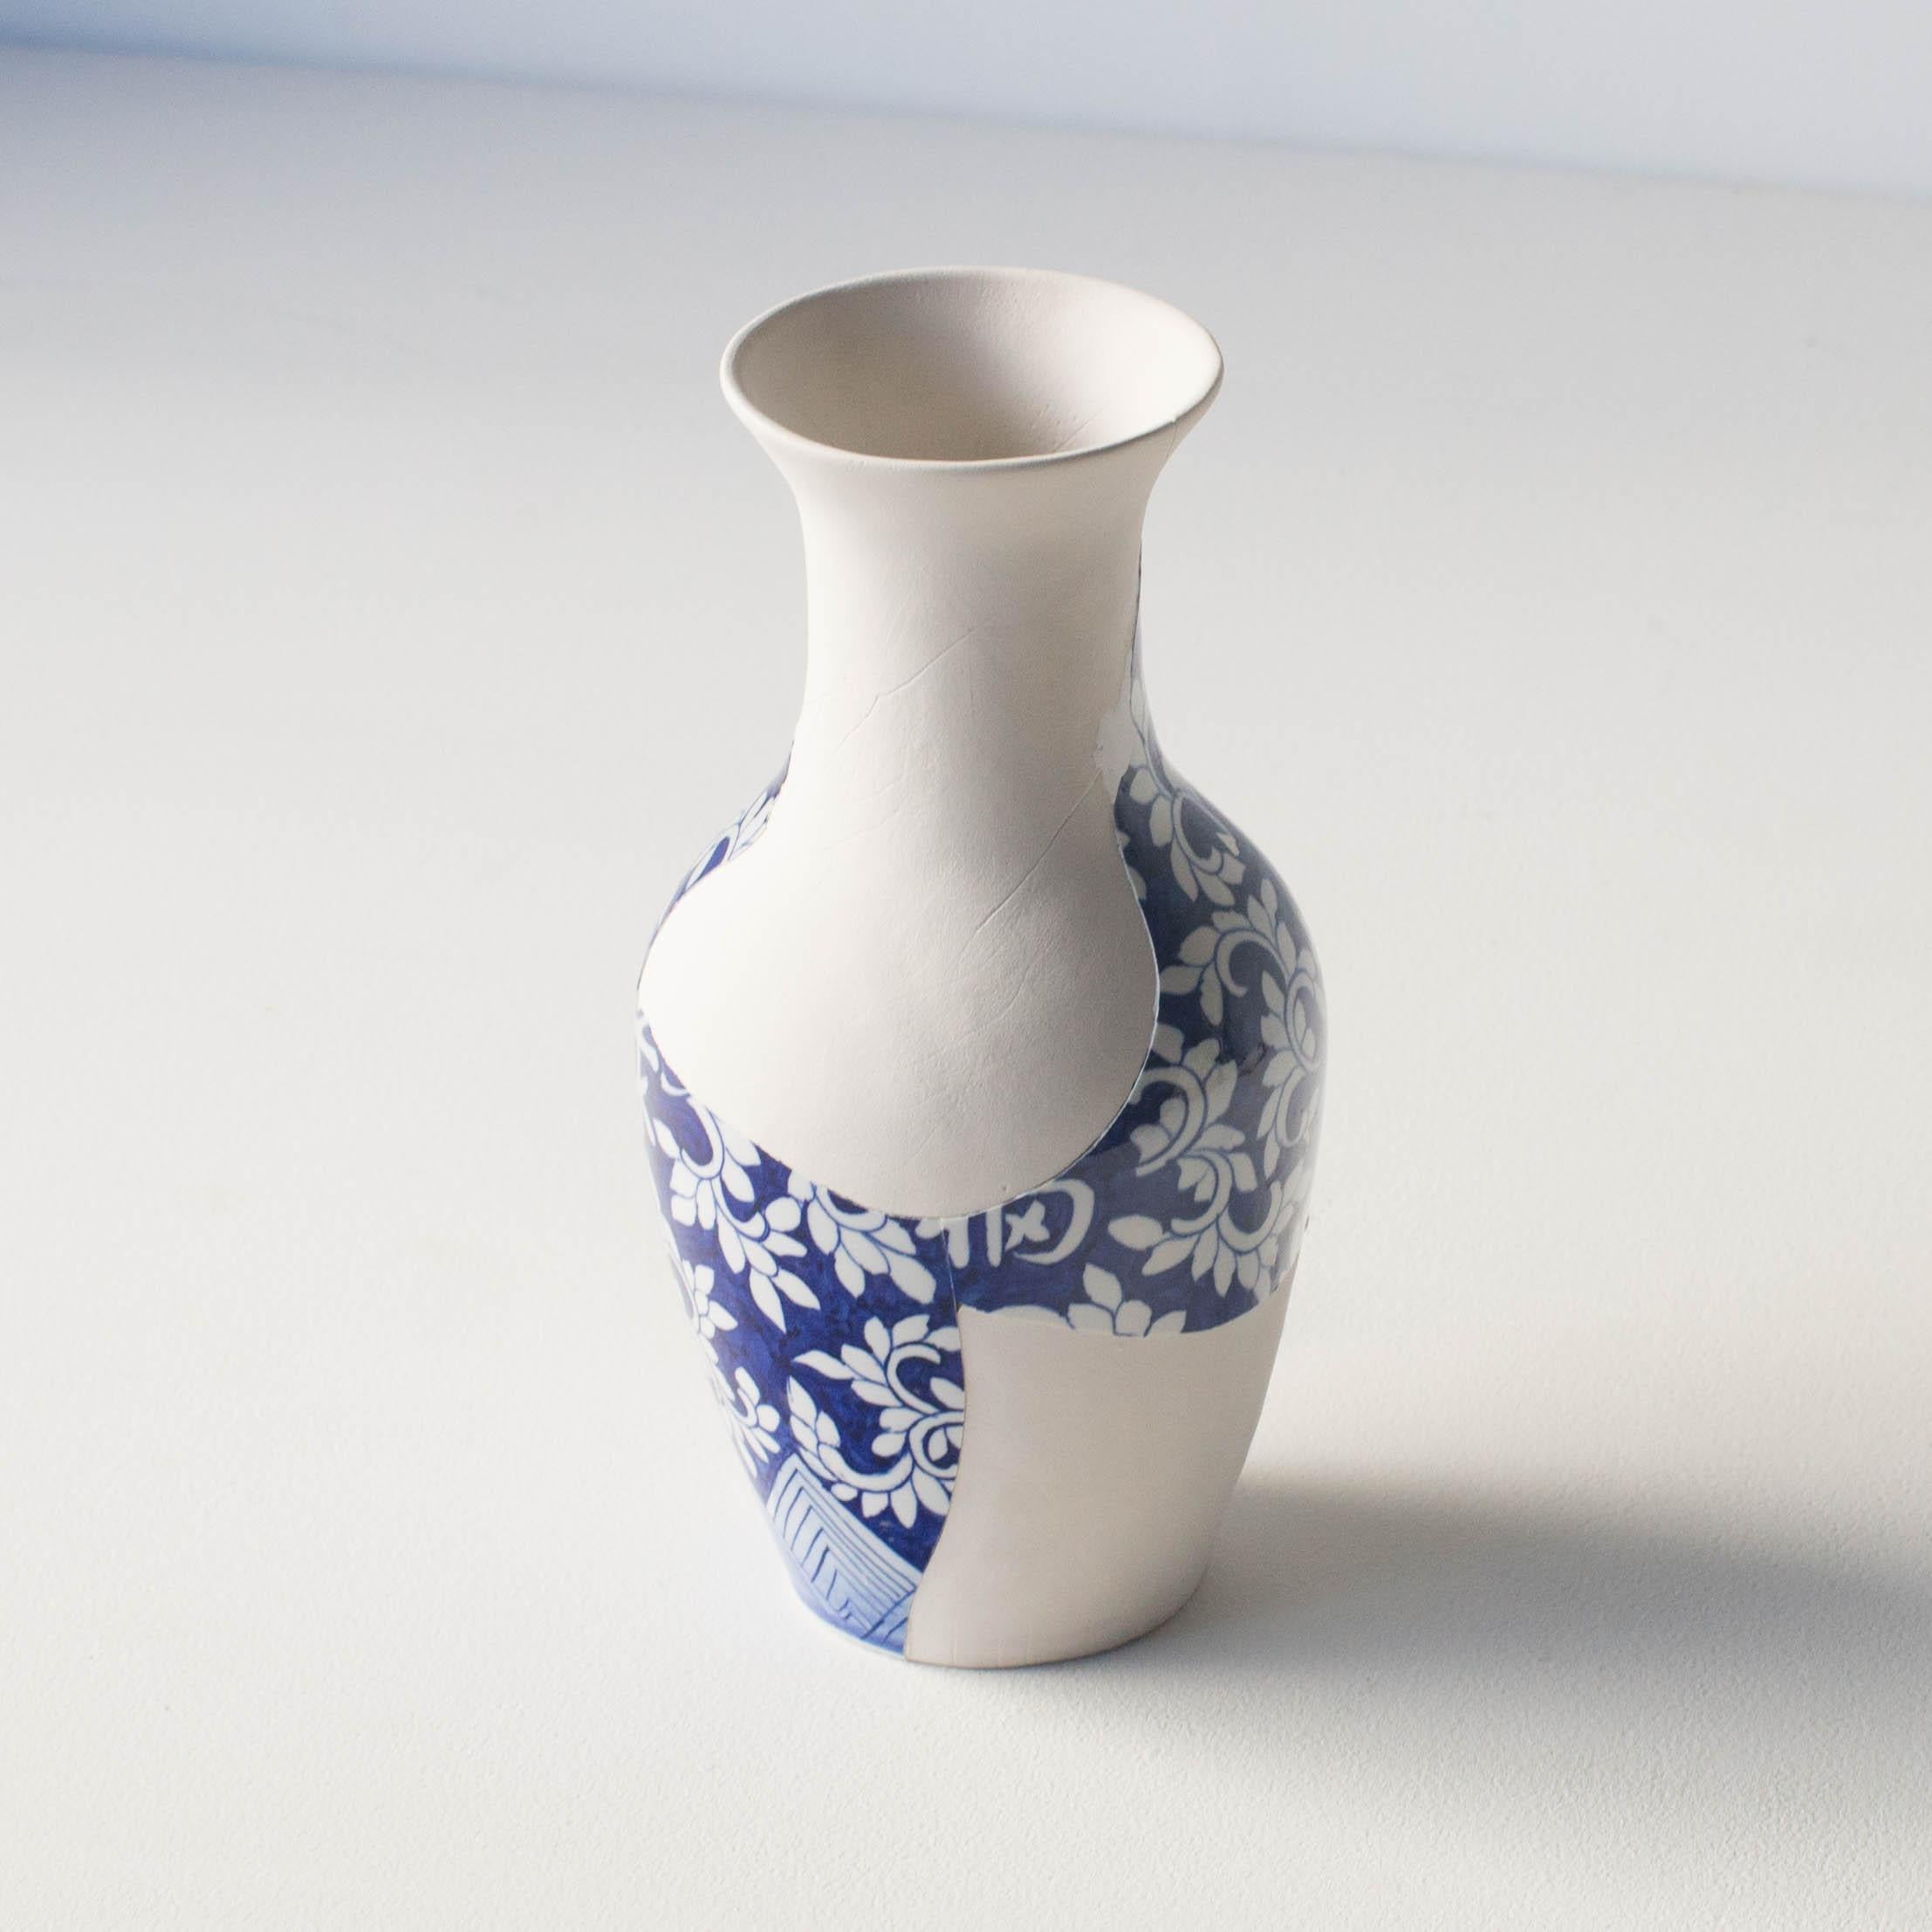 Japonisme Reconstructed Ceramics #2 Contemporary Zen Japonism Style